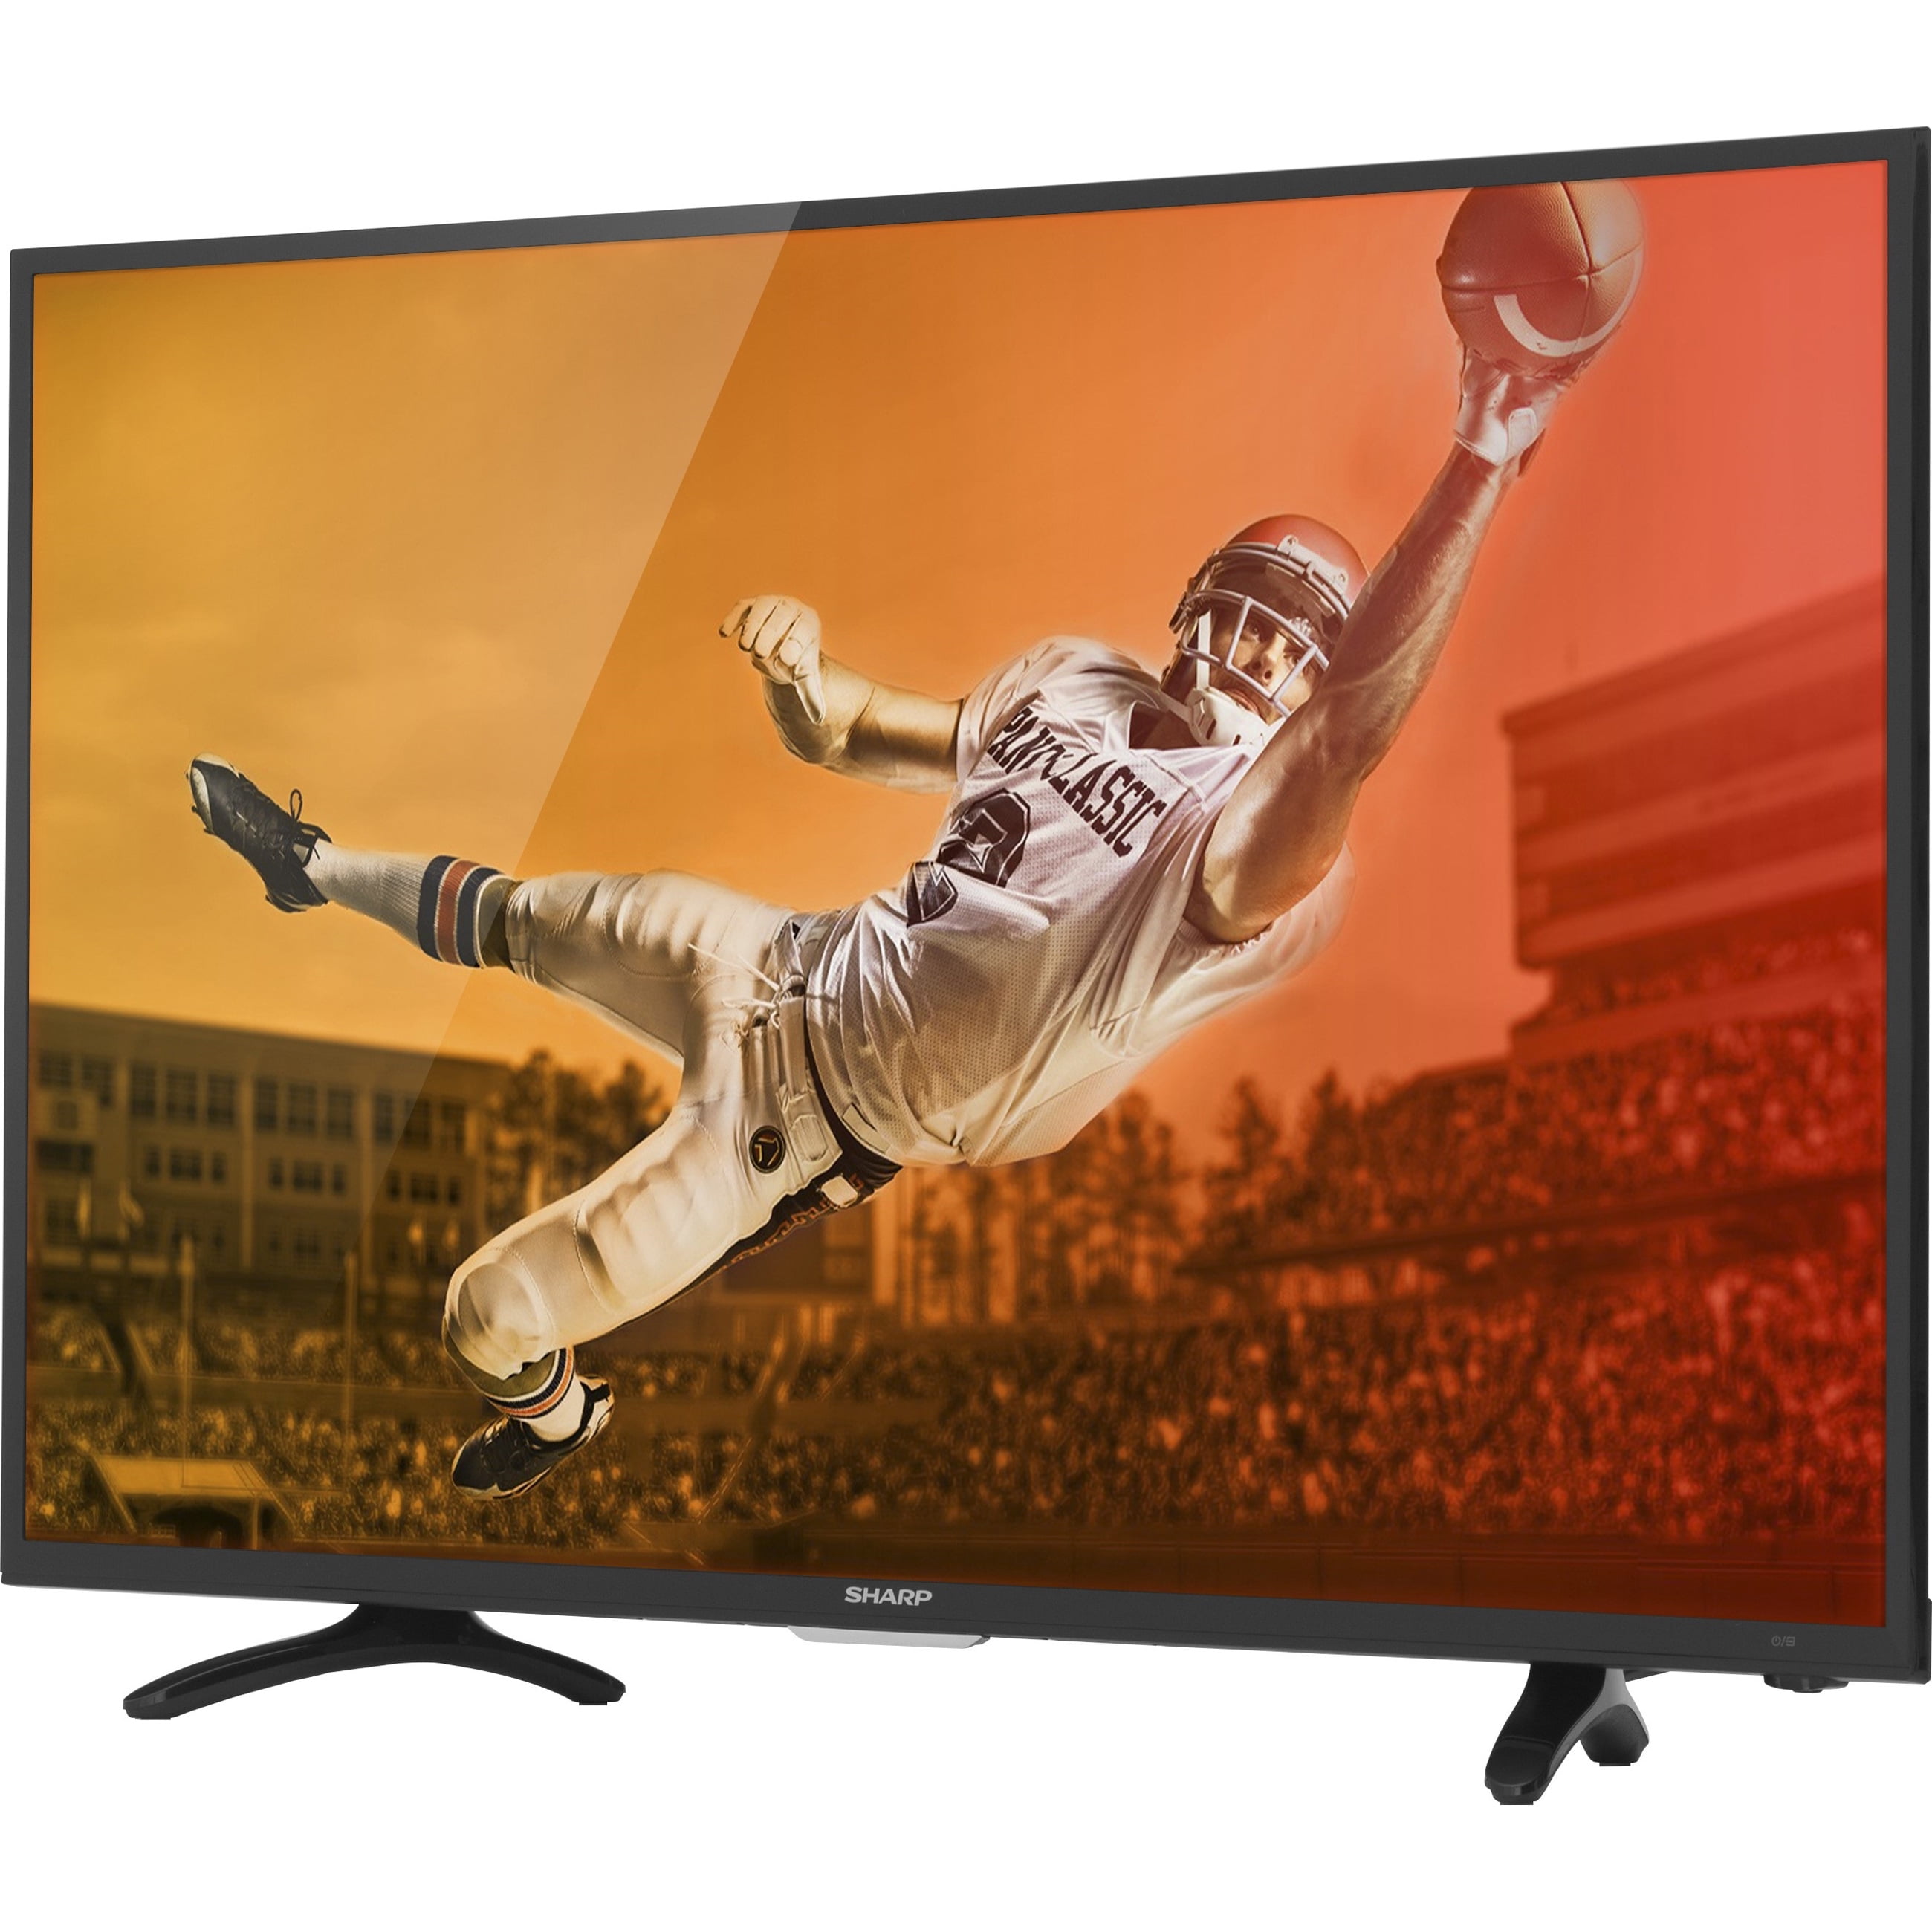 Sharp 40 Class HDTV (1080p) LED-LCD TV (LC-40N3000U